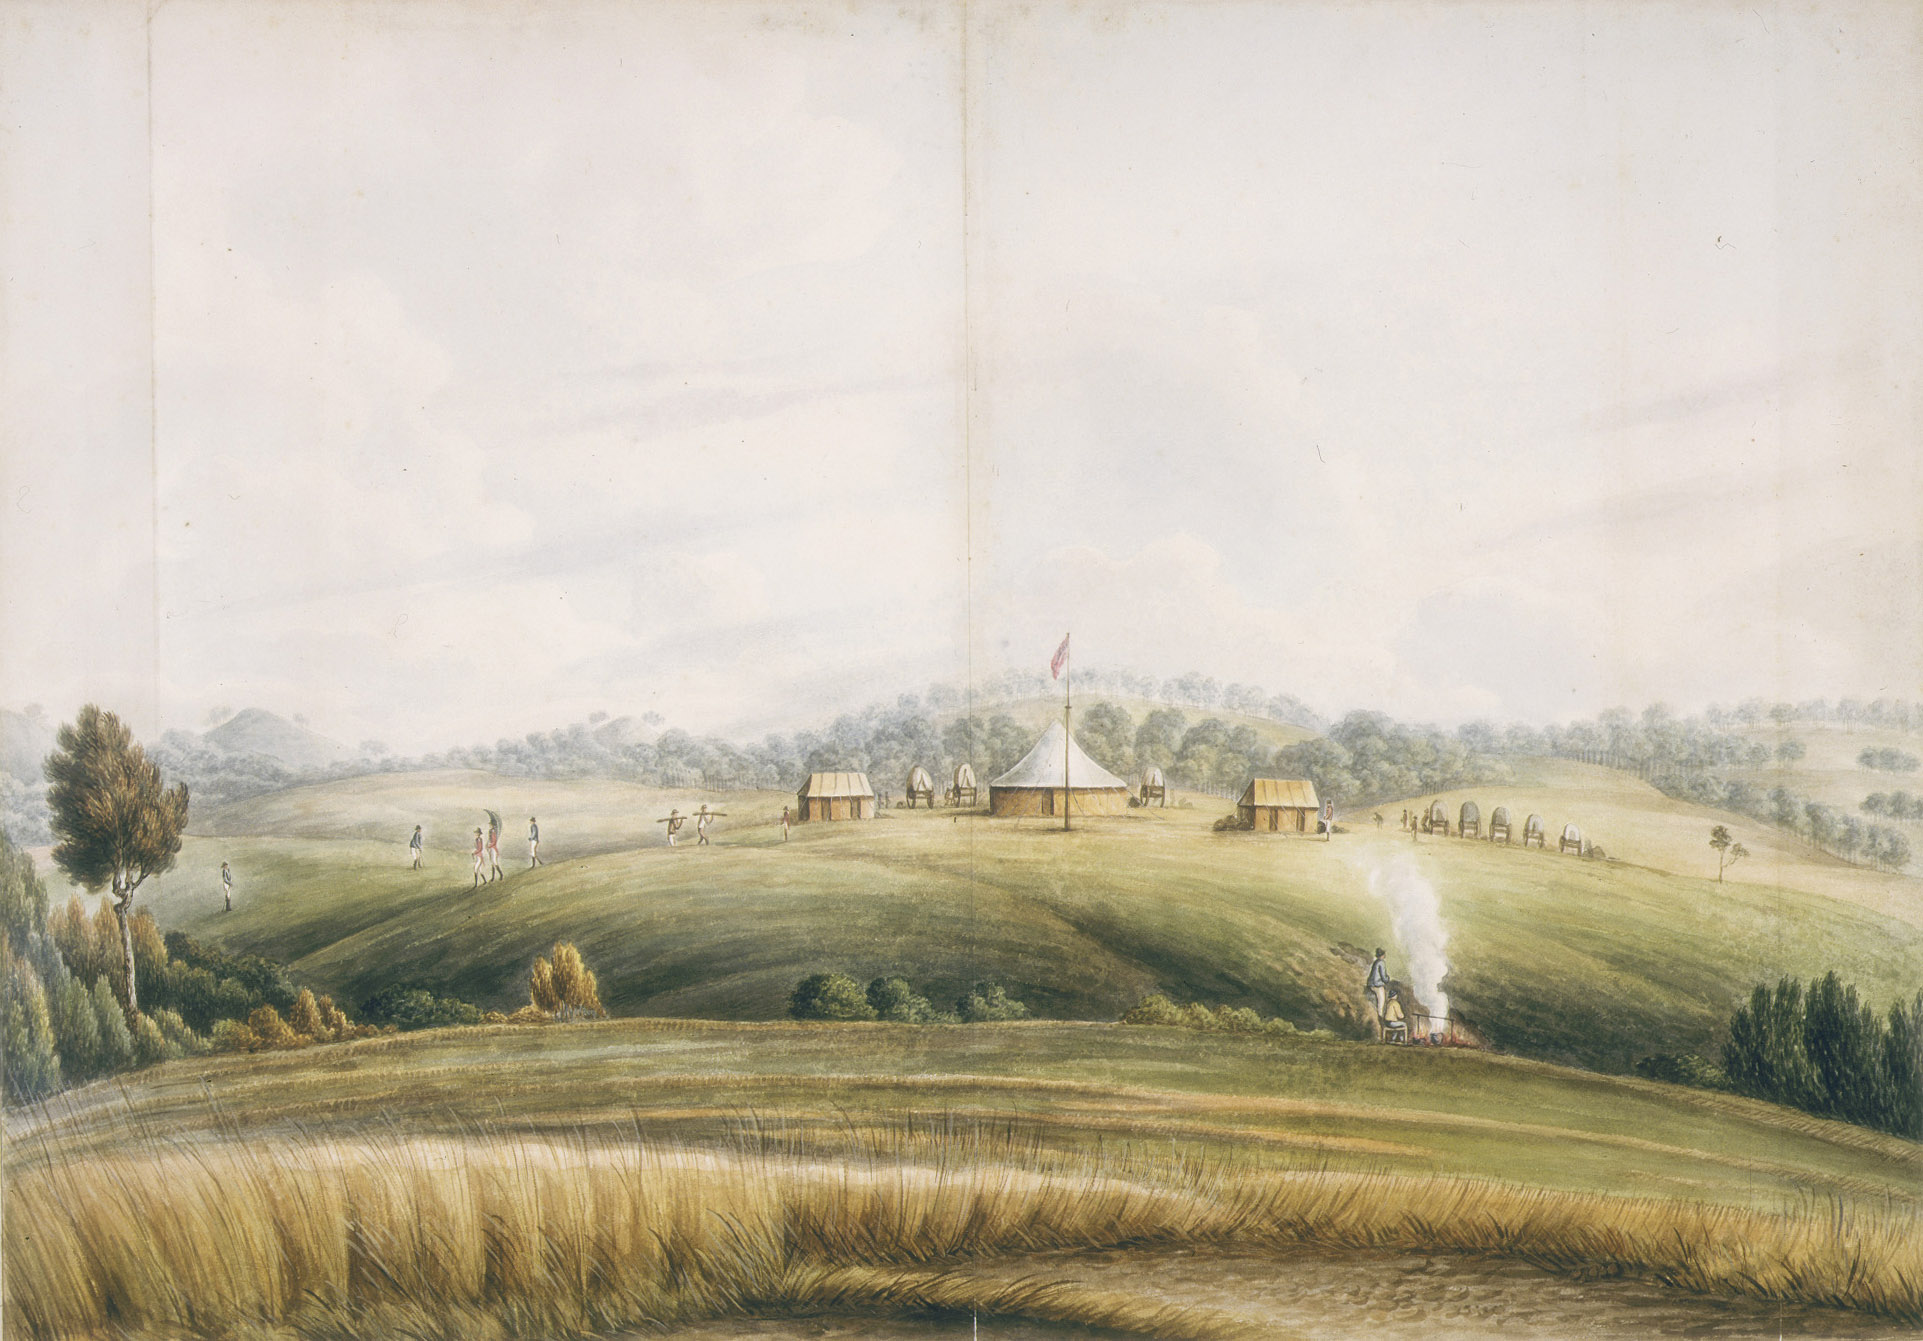 The Plains, Bathurst, by John Lewin, about 1815 